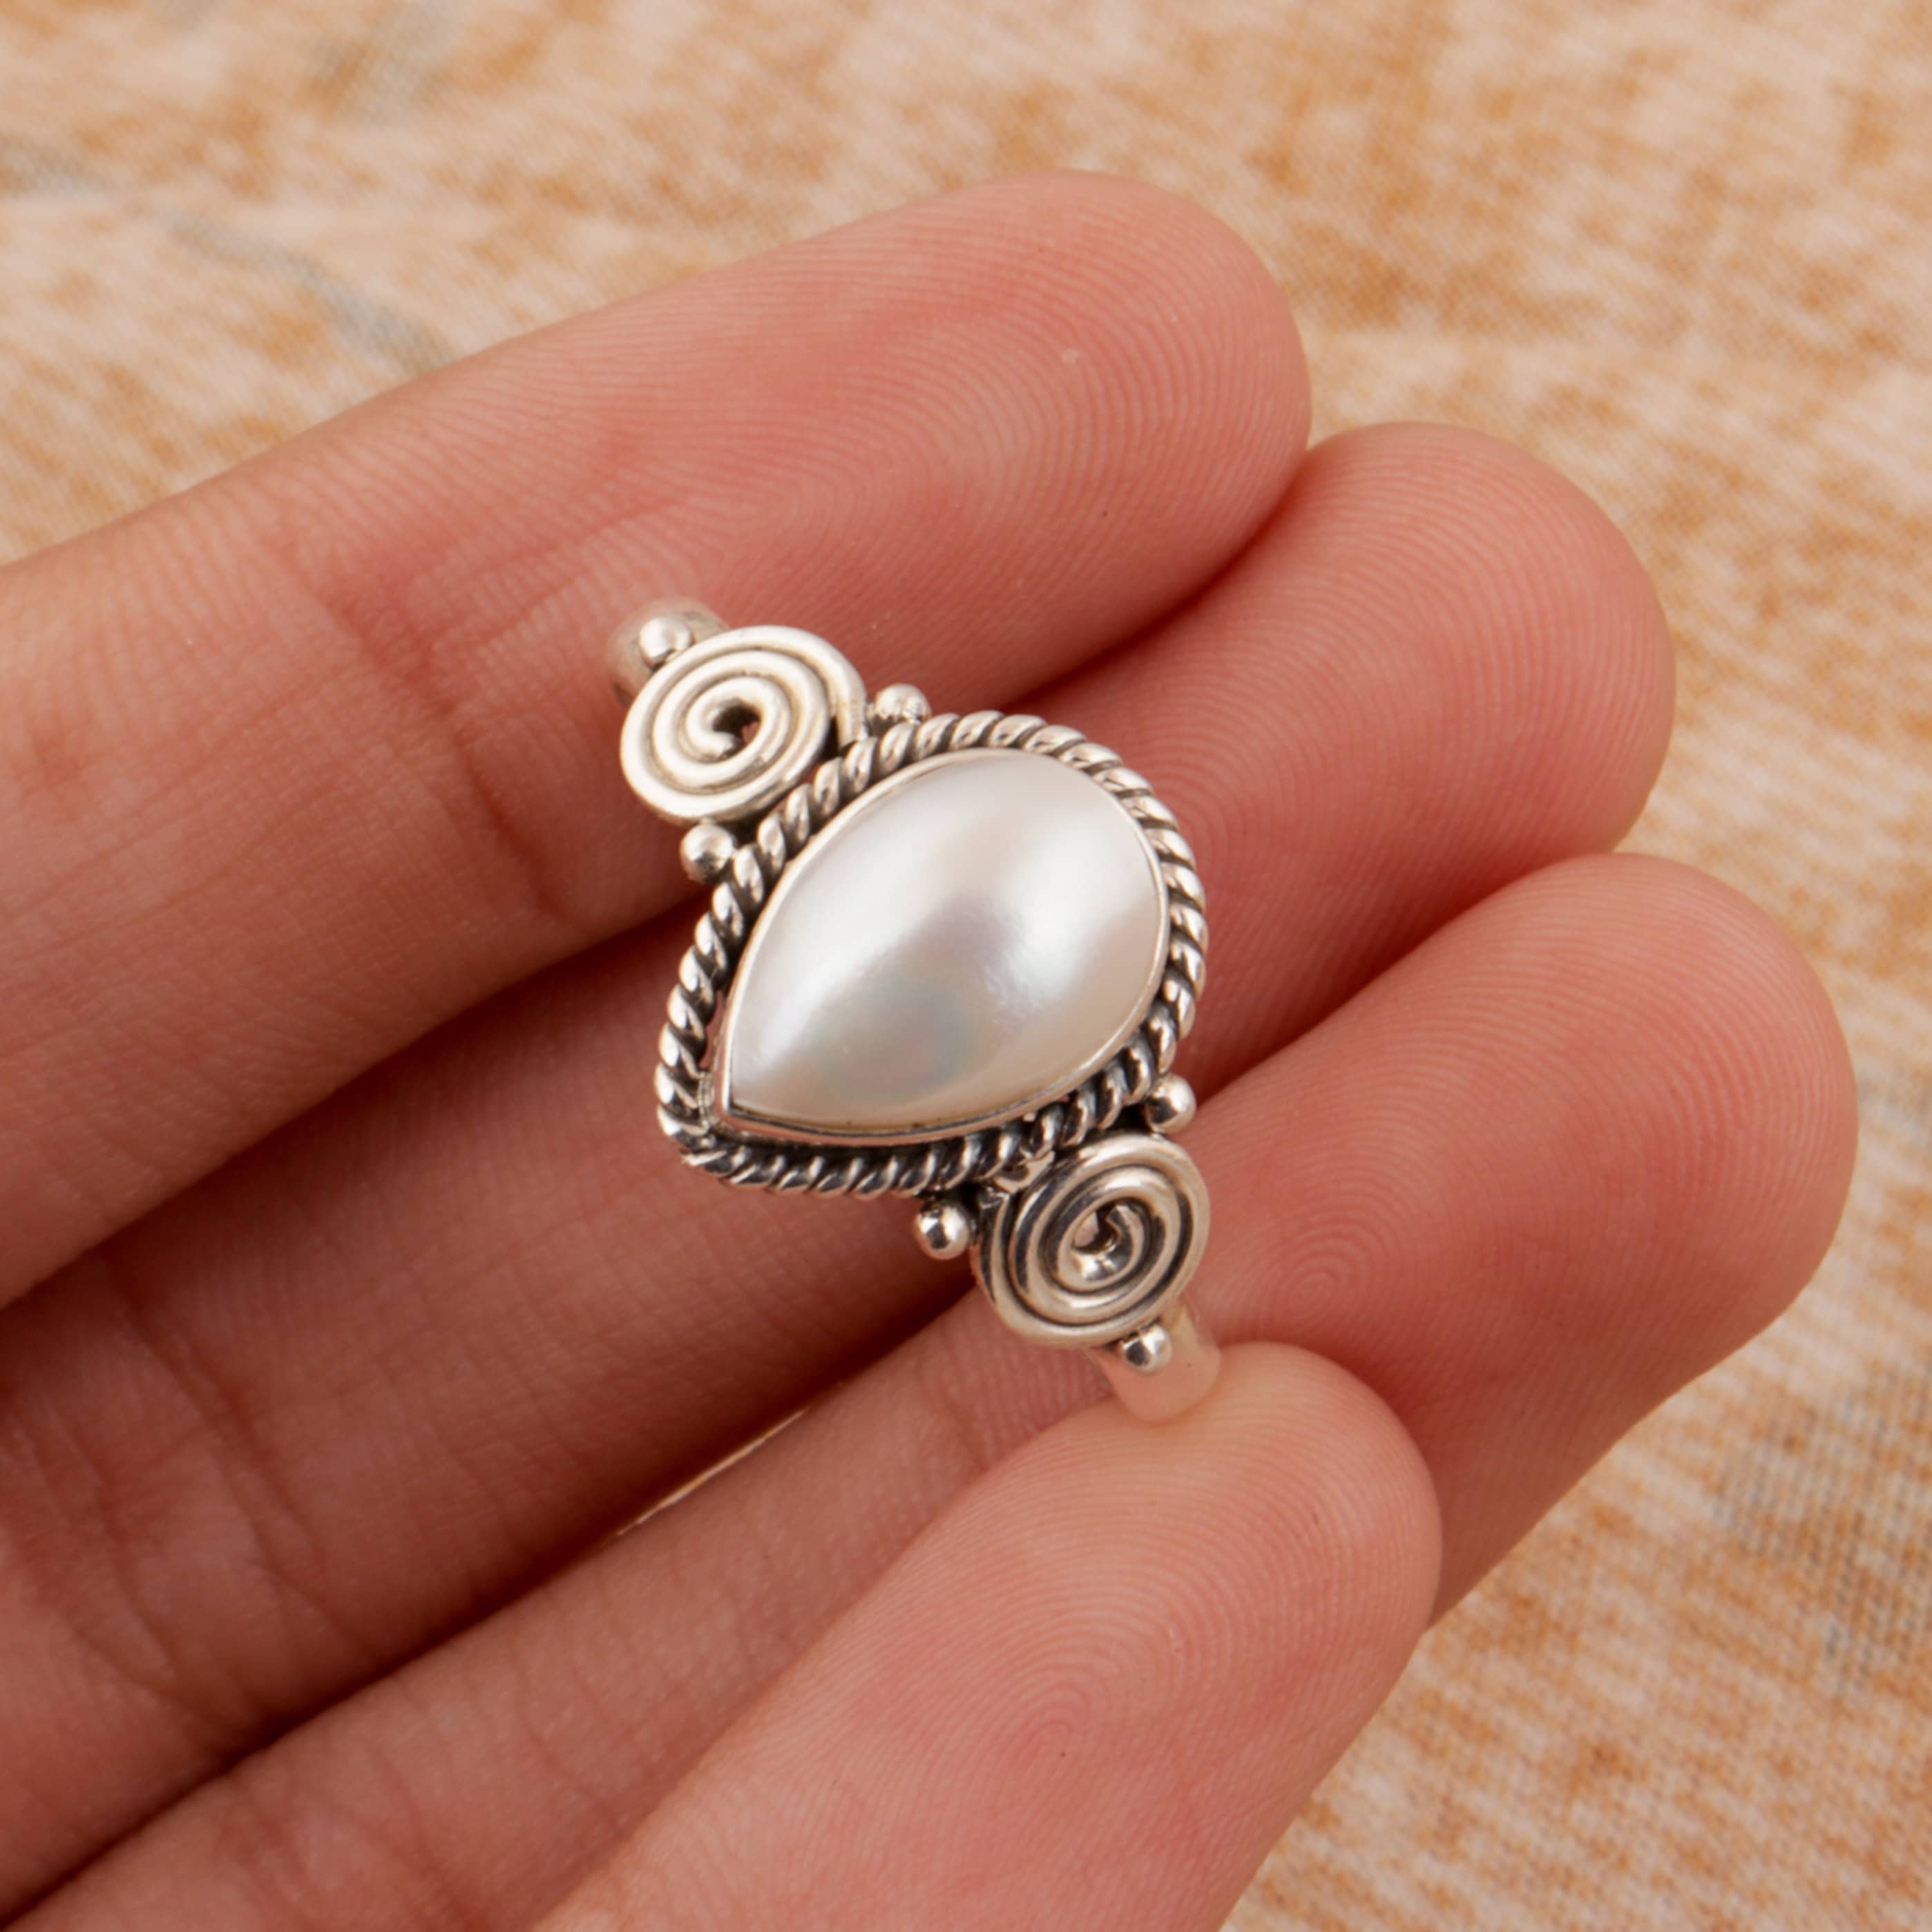 Pearl Rings - Buy Pearl Rings Online at Best Prices In India | Flipkart.com